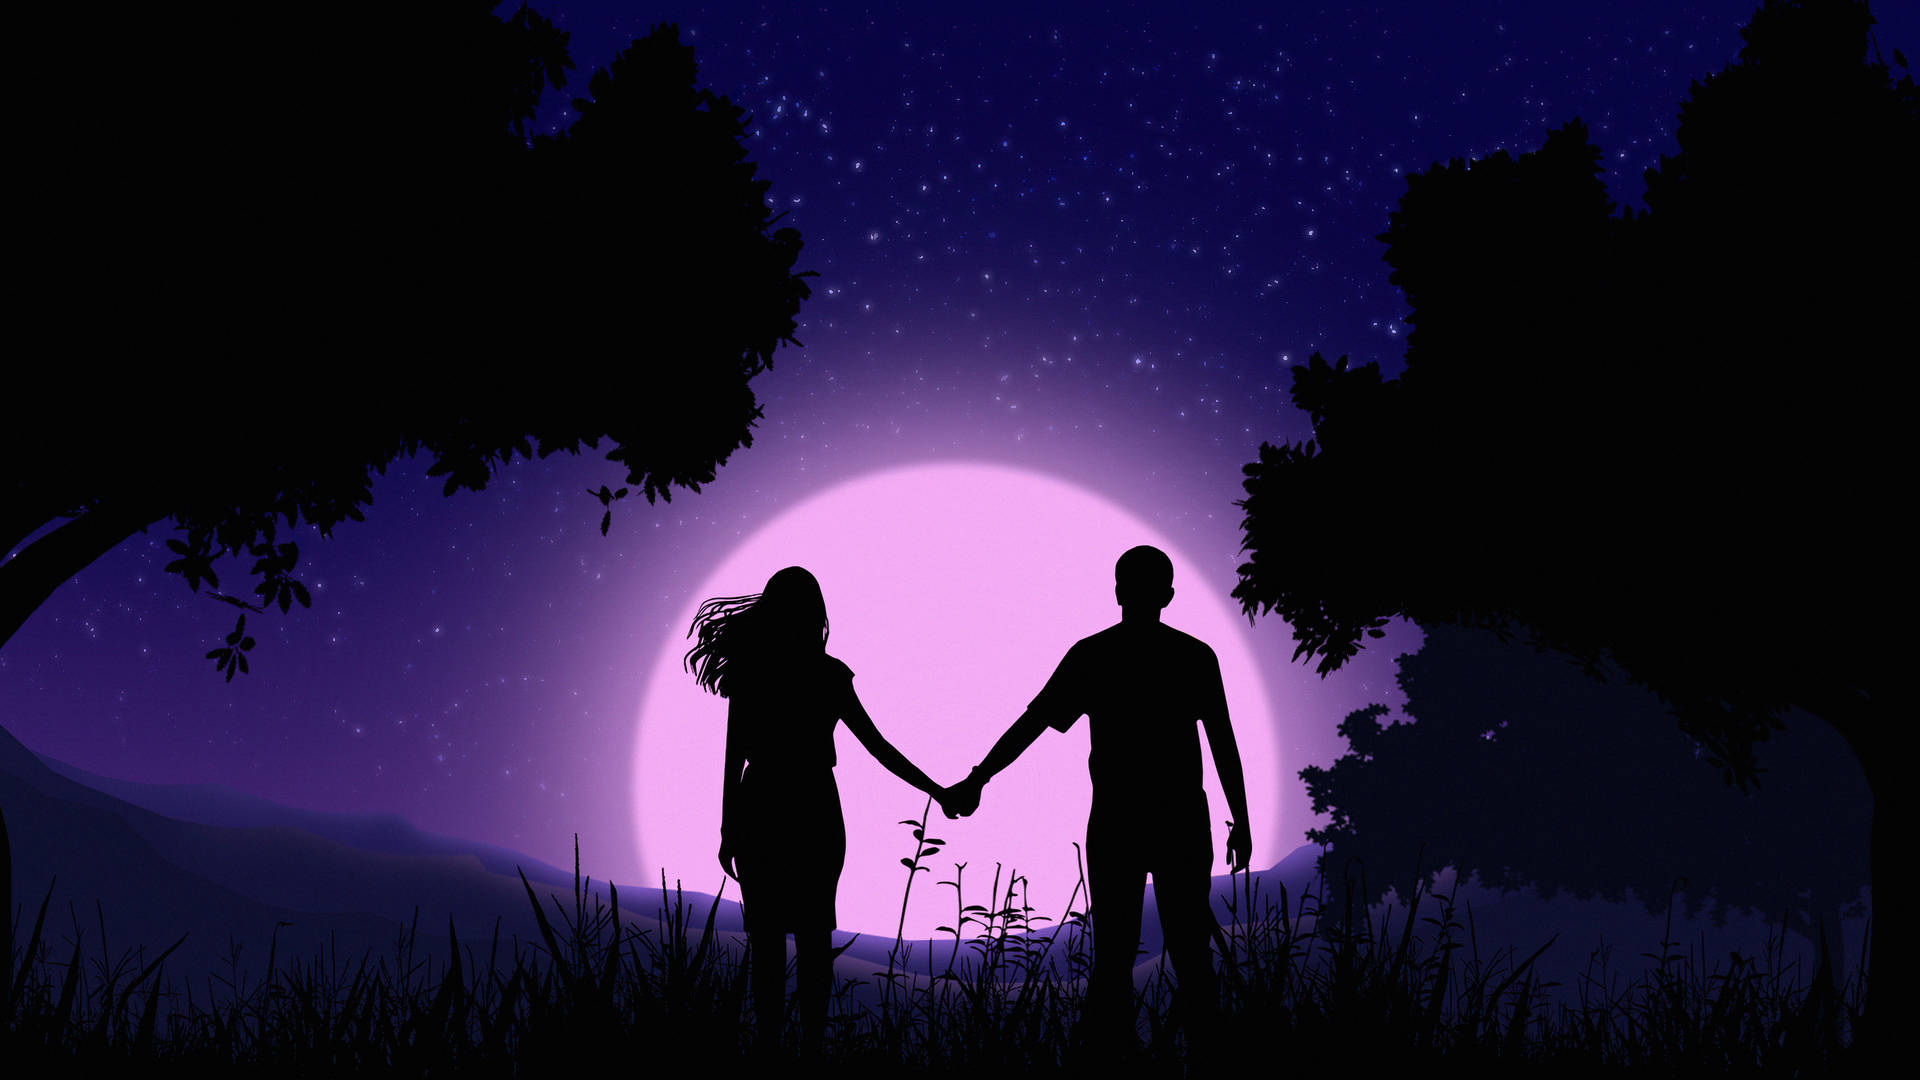 Holding Hands Silhouette In Purple Sky Digital Art Wallpaper